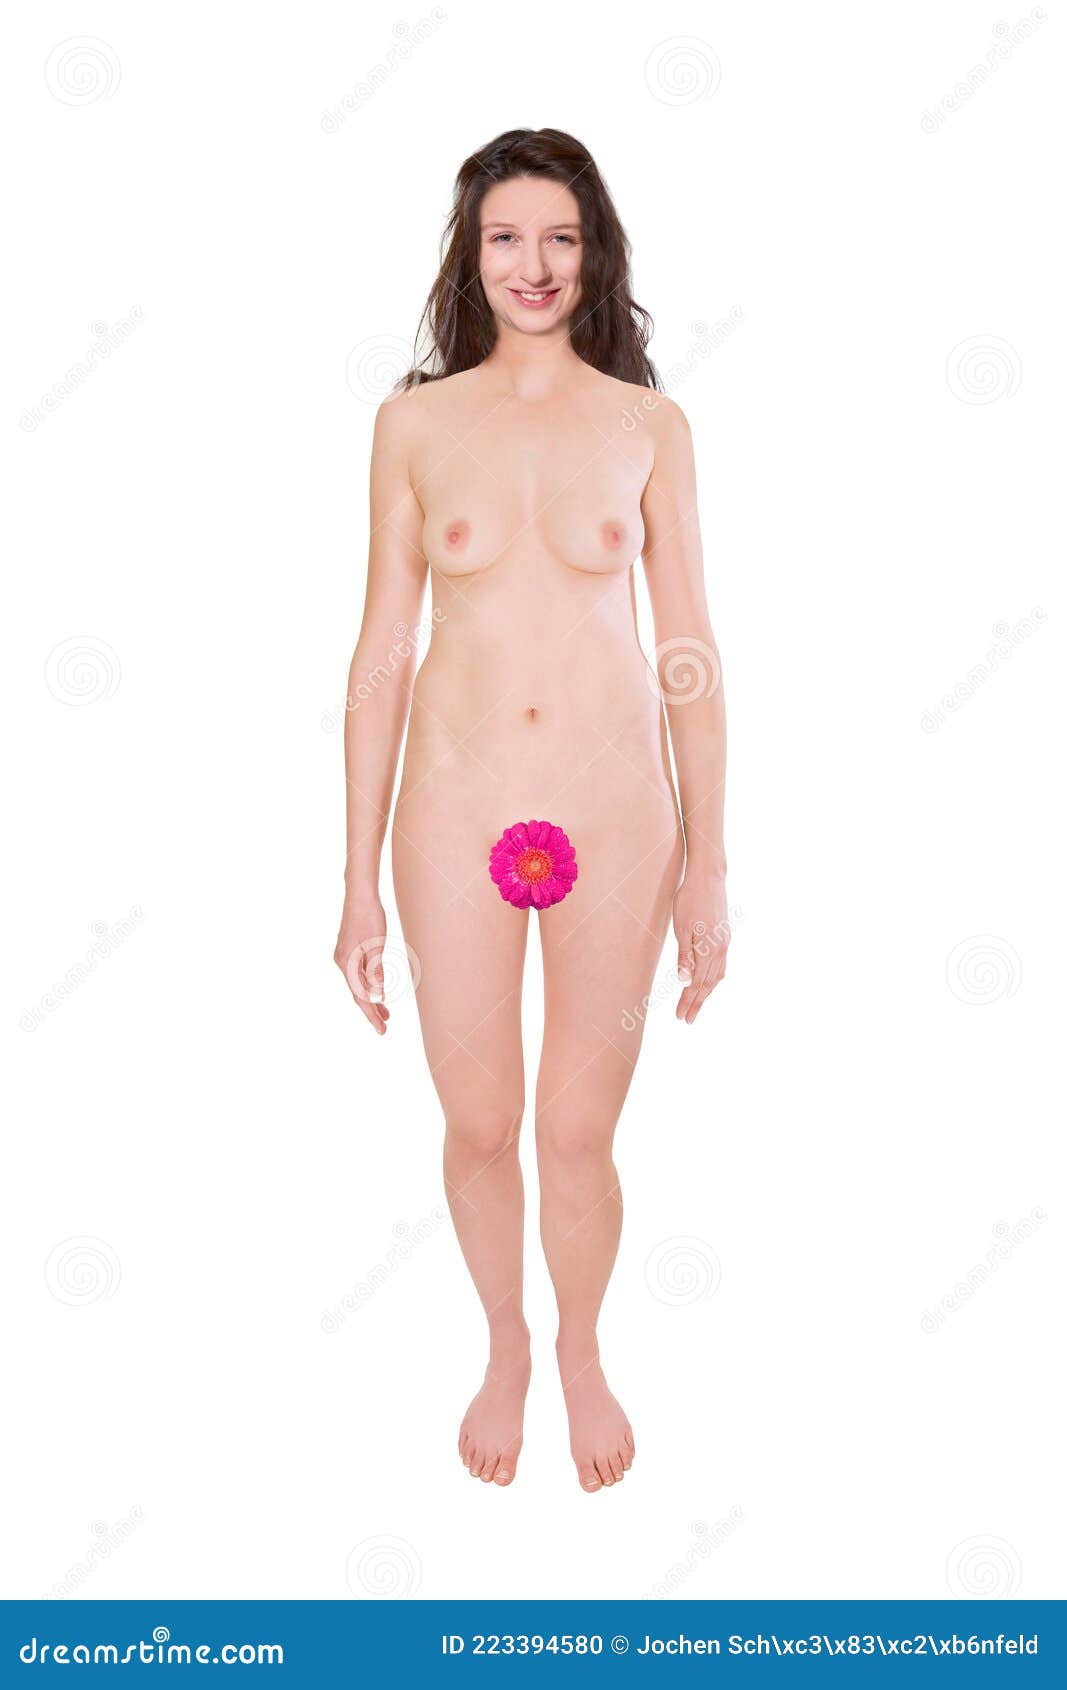 Private Photo Nude Women